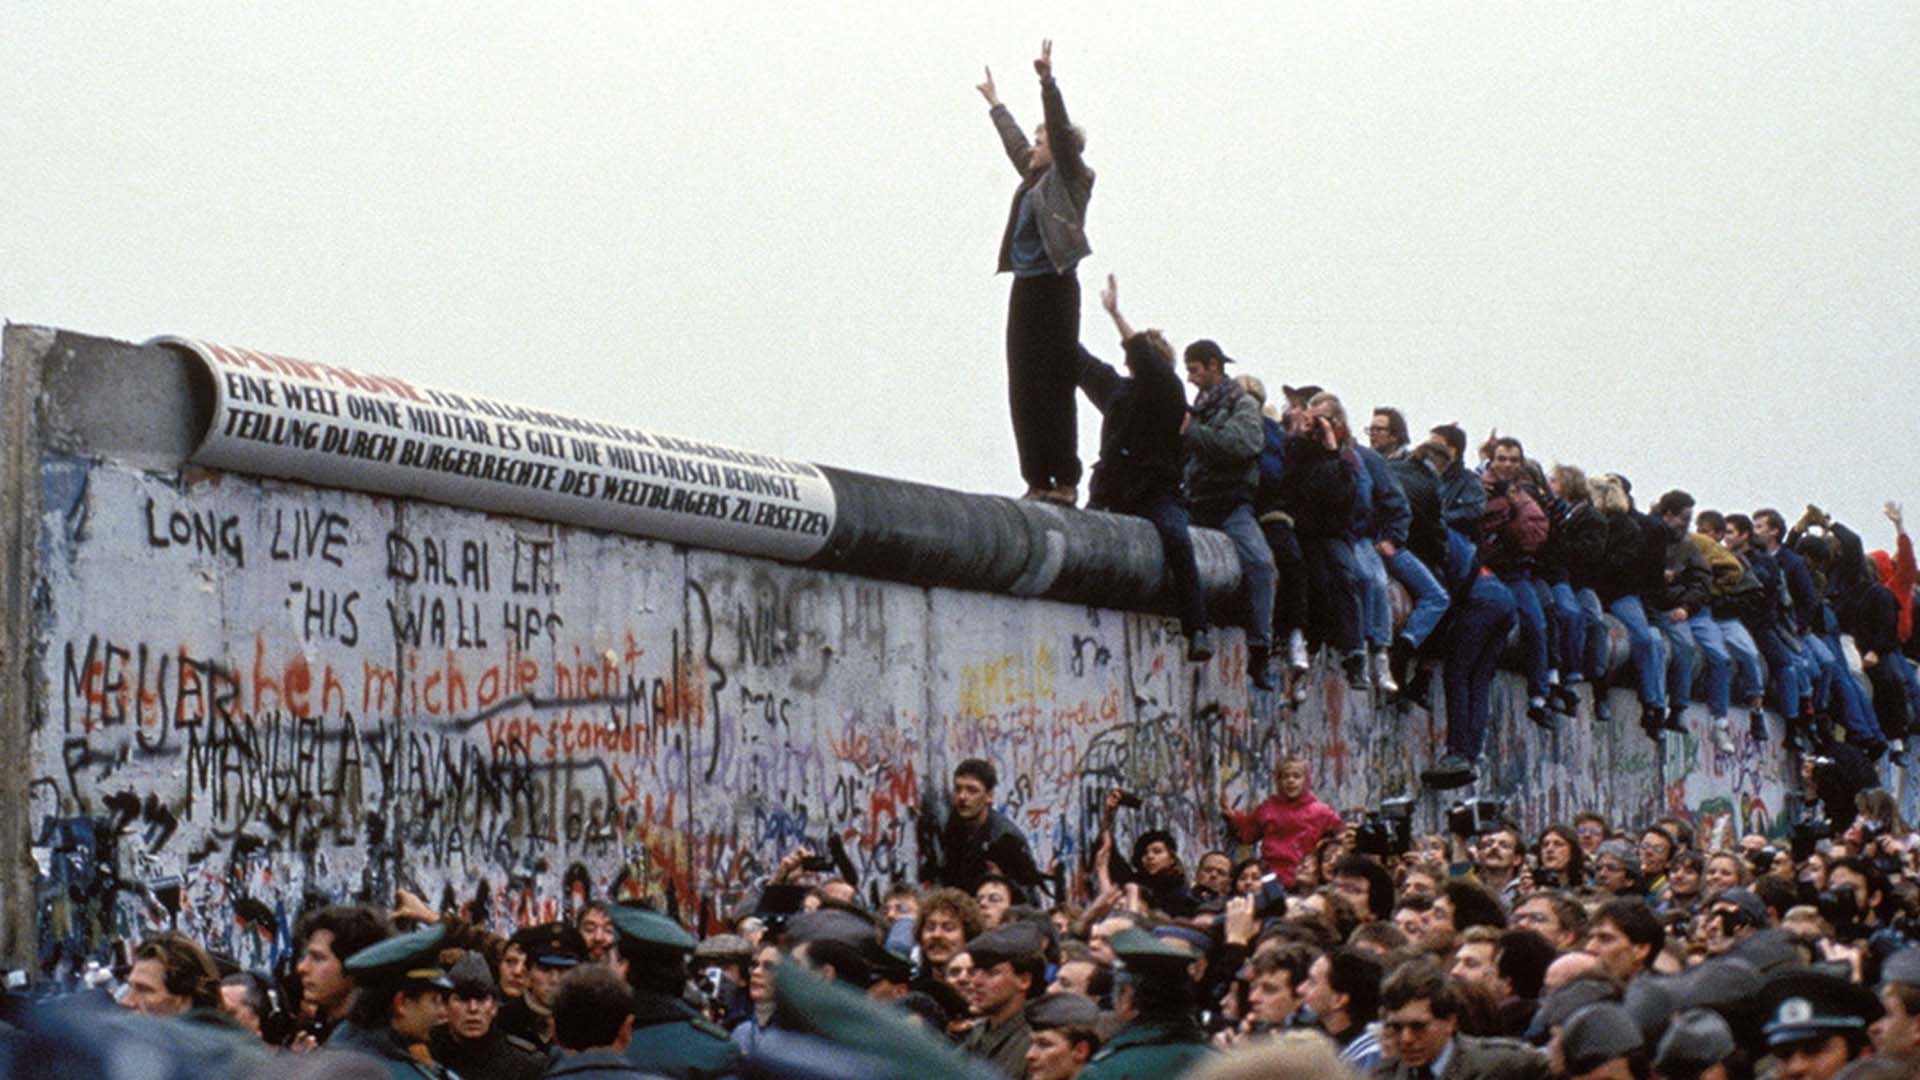 Lo que representó el muro de Berlín para la literatura de posguerra